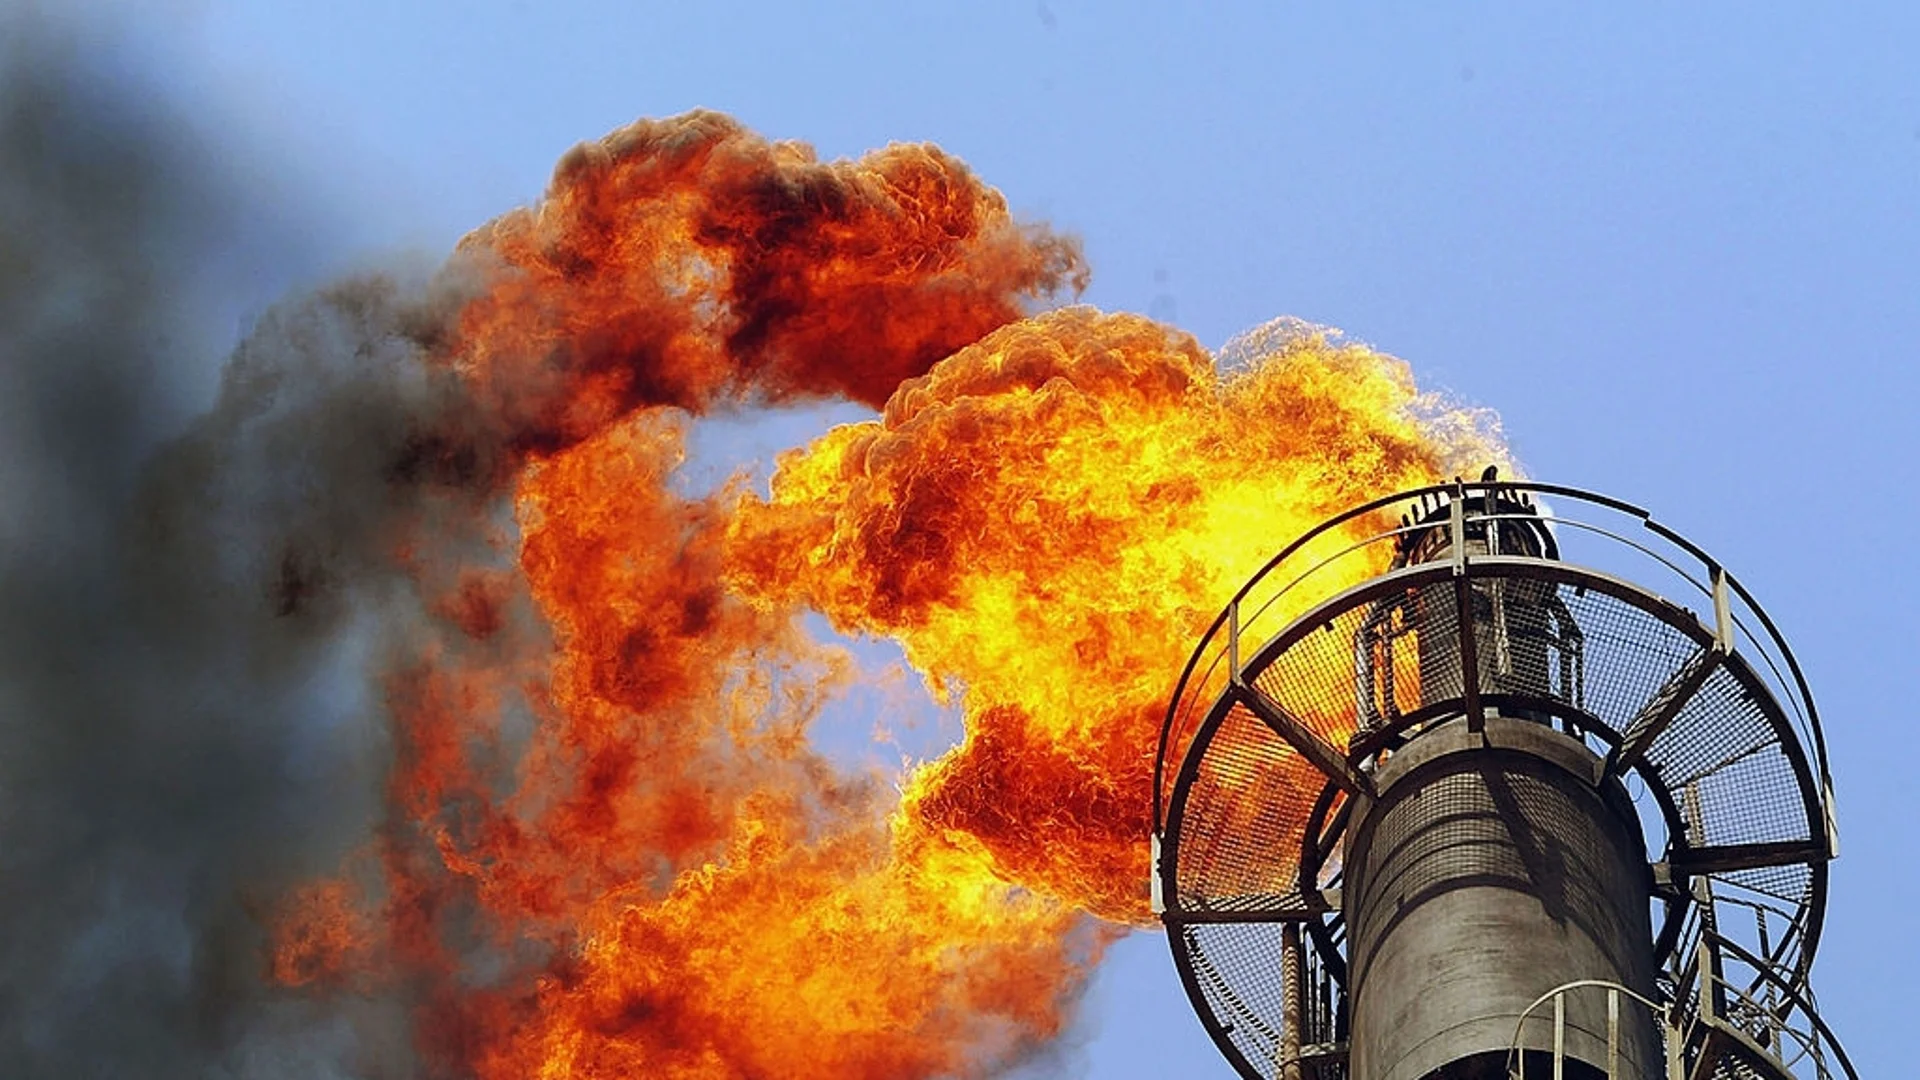 Сателитни снимки: Поне 3 унищожени петролни резервоара след украинския удар в Луганск